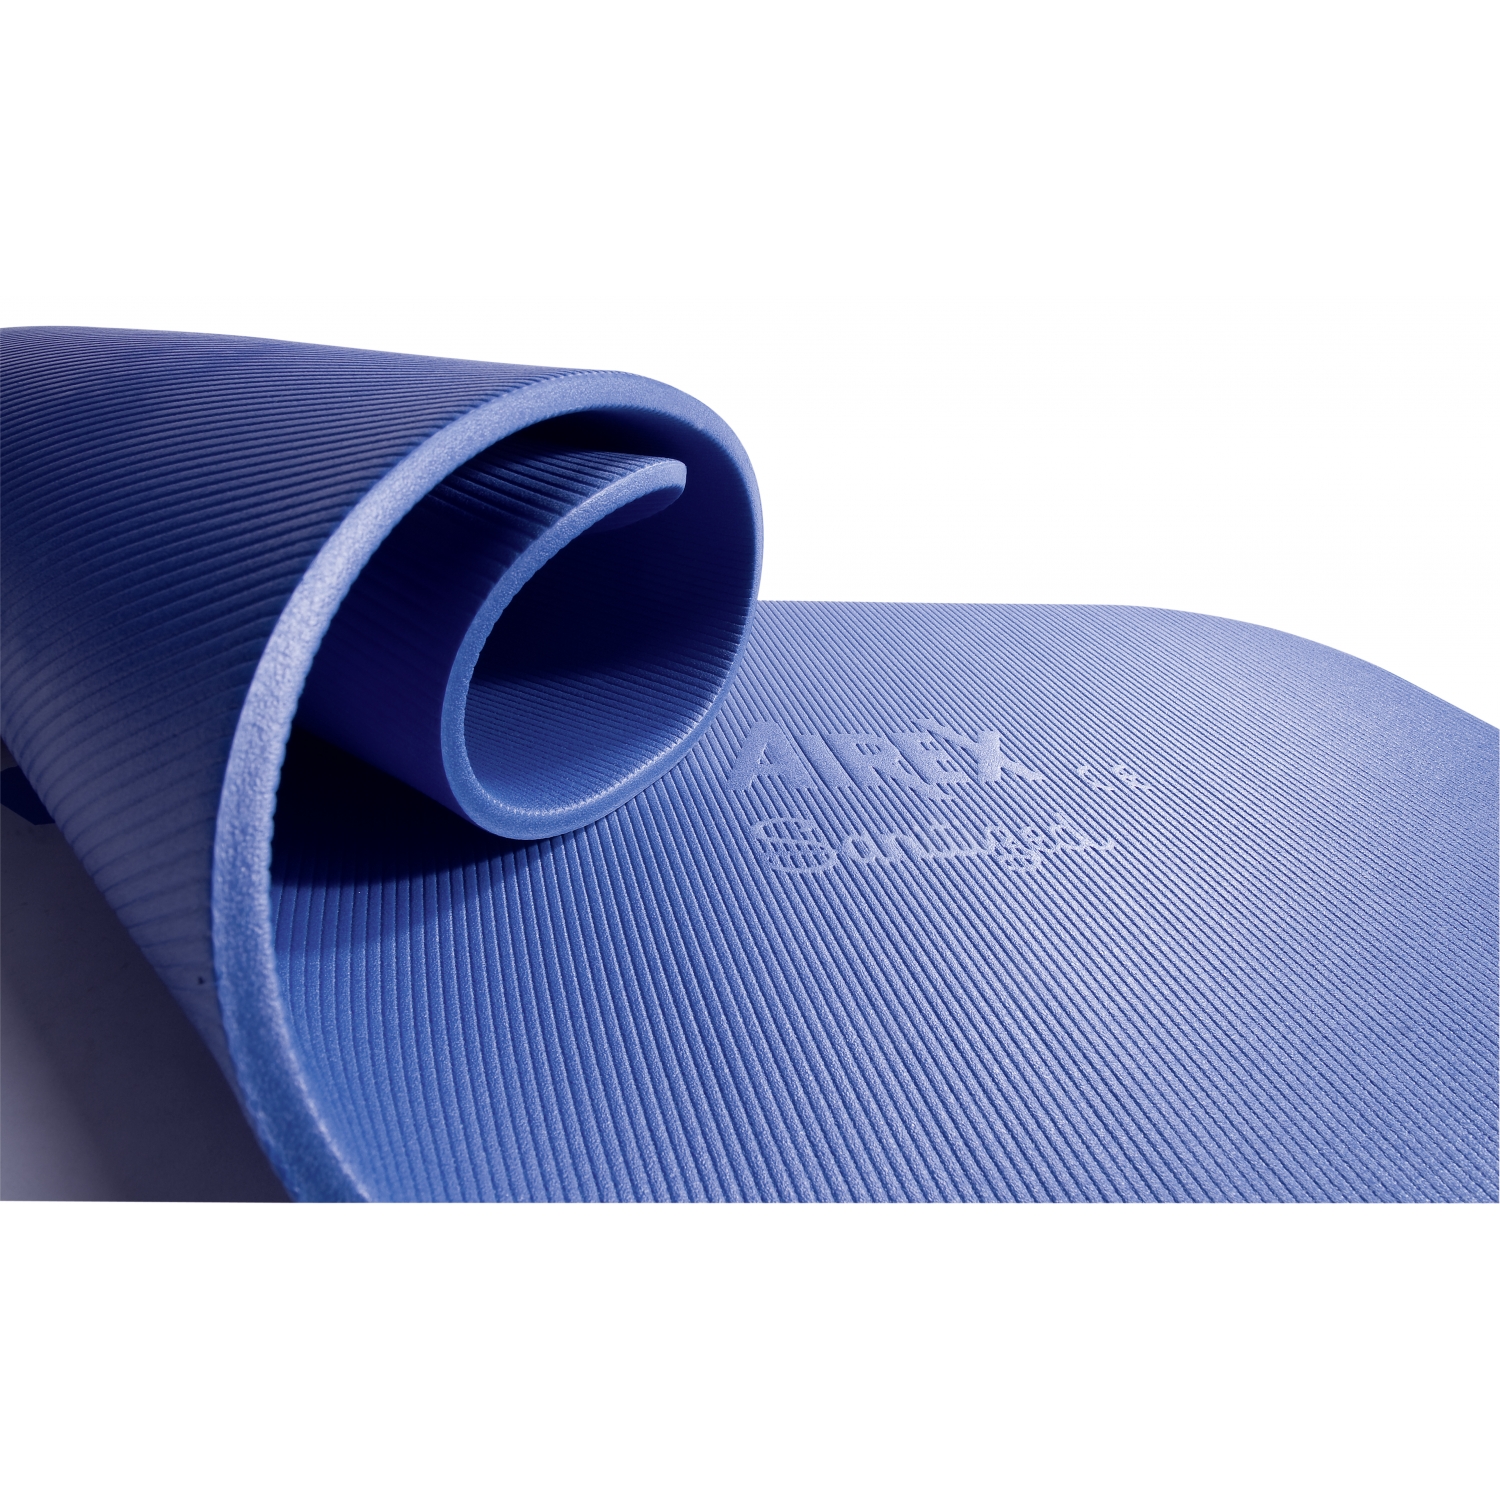 Airex tapis Coronella - 185 x 60 x 1,5 cm - bleu